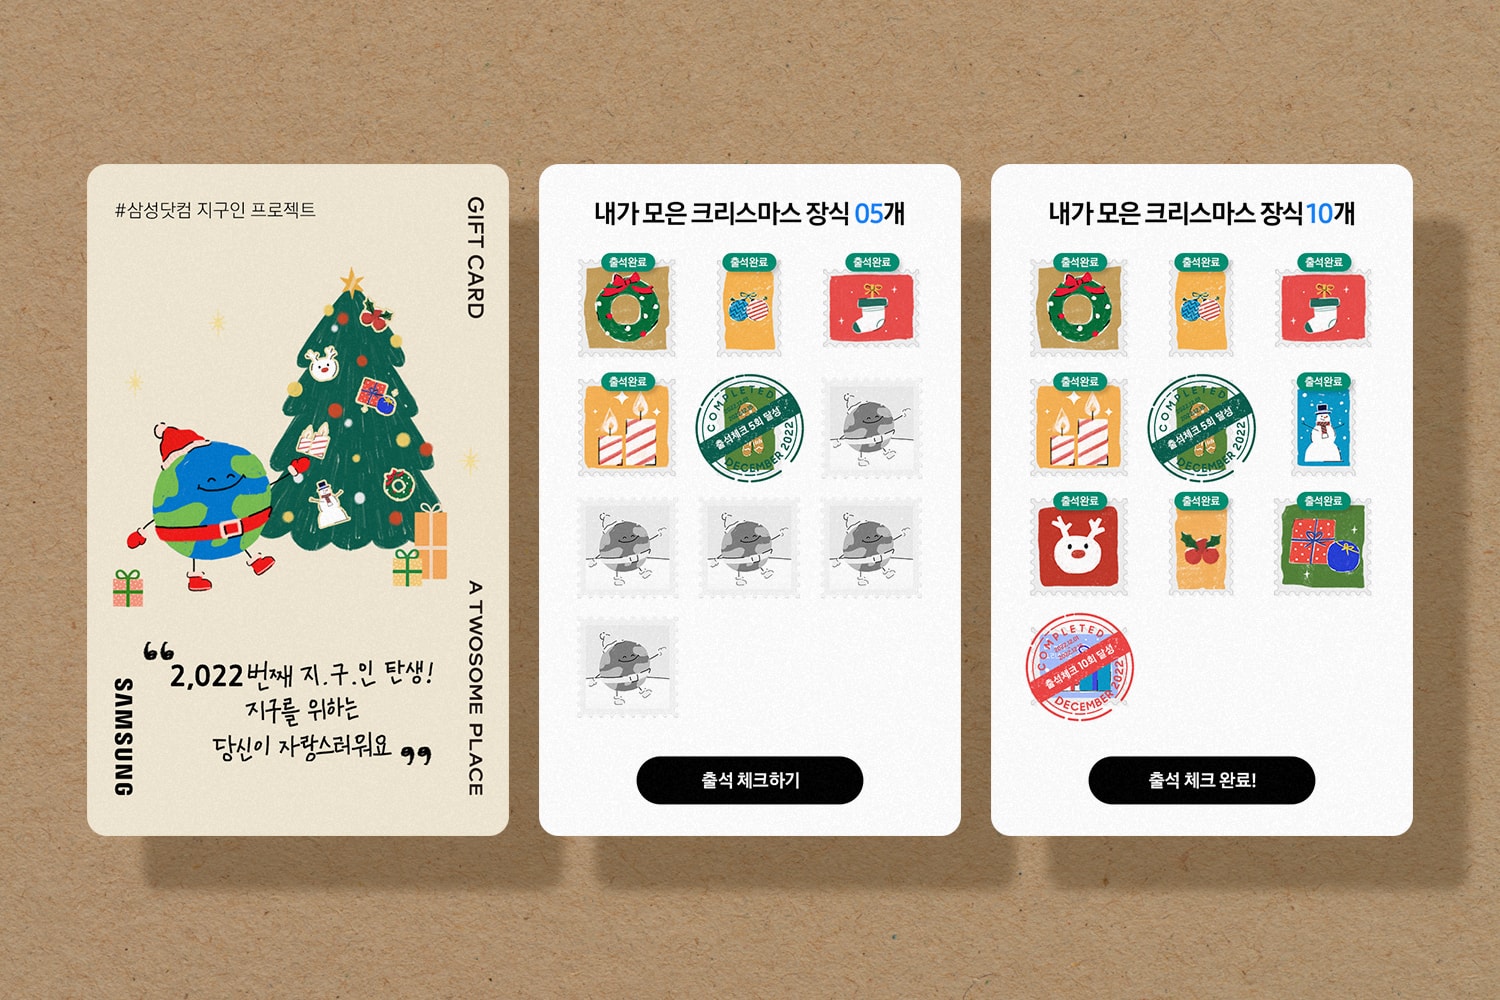 삼성닷컴, 친환경 활동 접목한 ‘중고가전 추가보상 프로그램’ 전개 samsung recycling gift card event